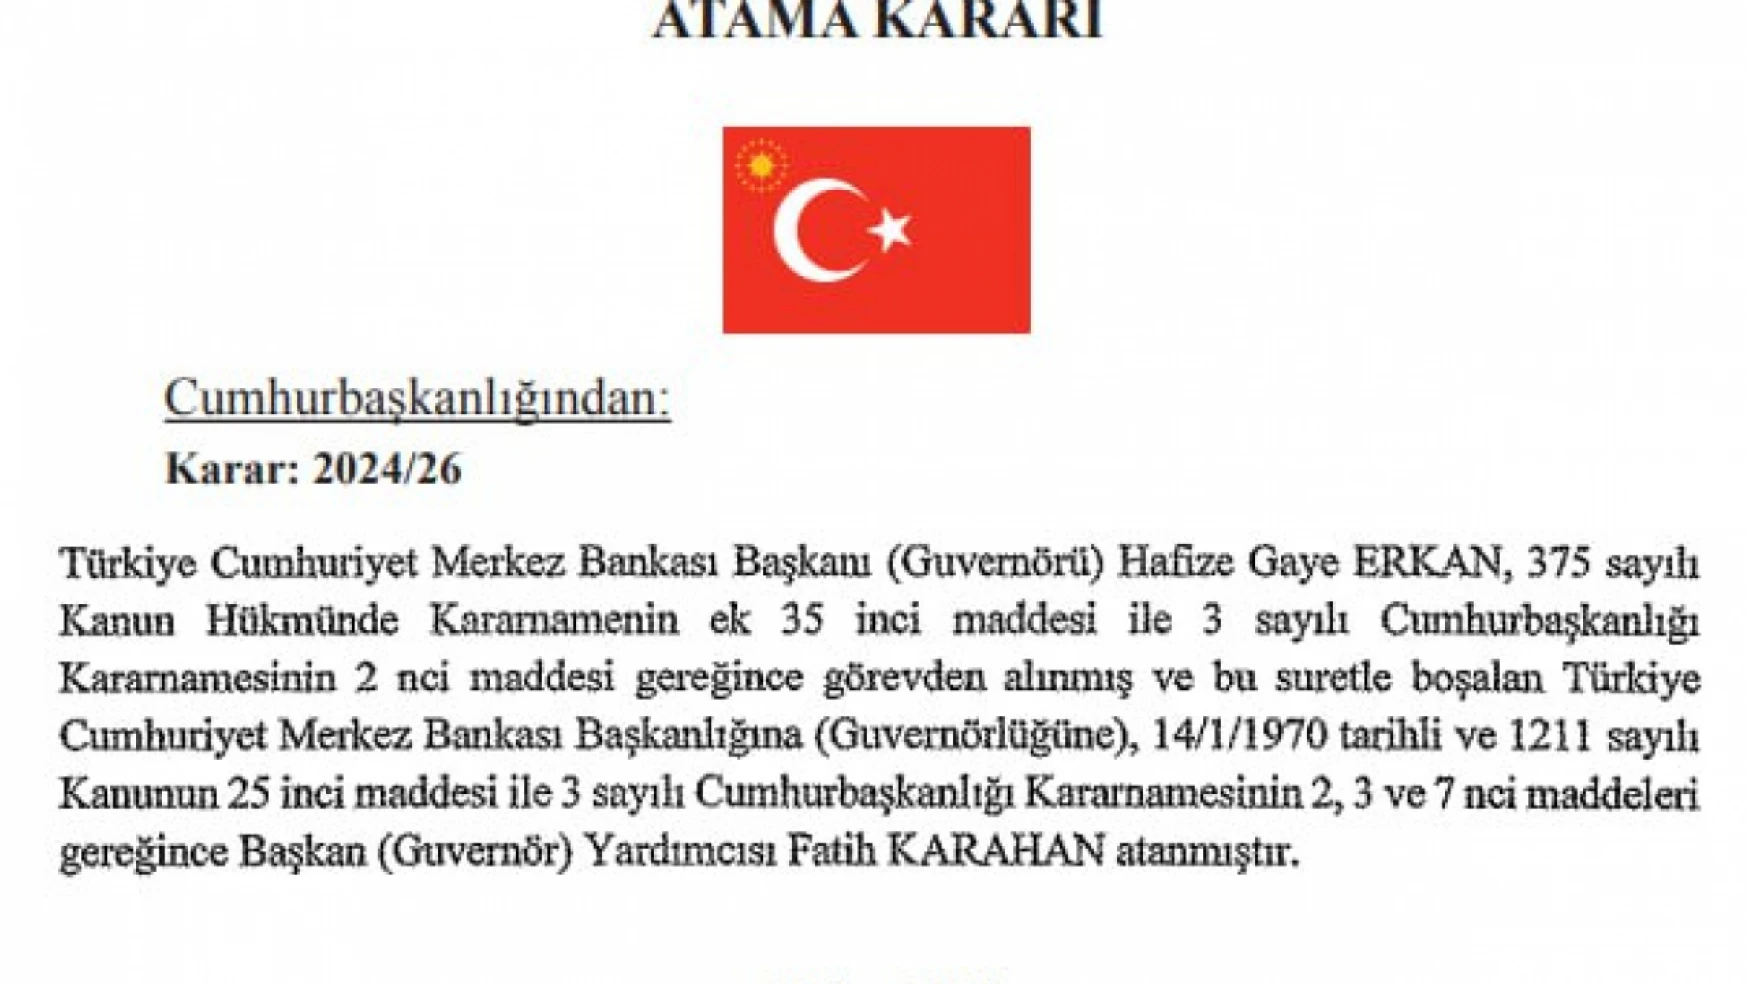 Merkez Bankası Başkanı Hafize Gaye Erkan görevden alındı ve yerine Başkan Yardımcısı Fatih Karahan atandı.